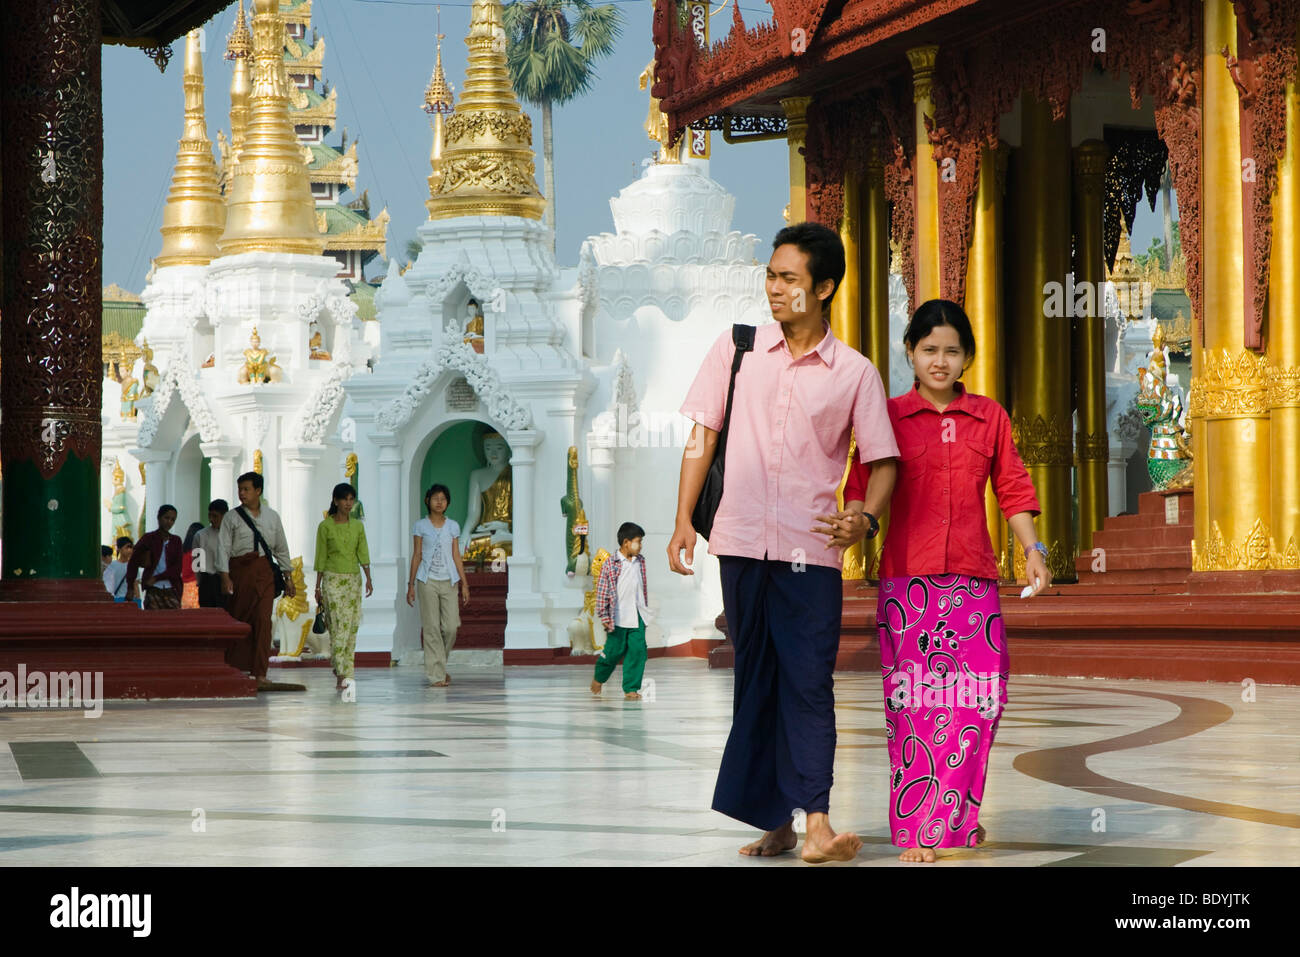 Burmesische paar in der Shwedagon-Pagode, buddhistische Tempel, Rangun, Yangon, Birma, Burma, Myanmar, Asien Stockfoto